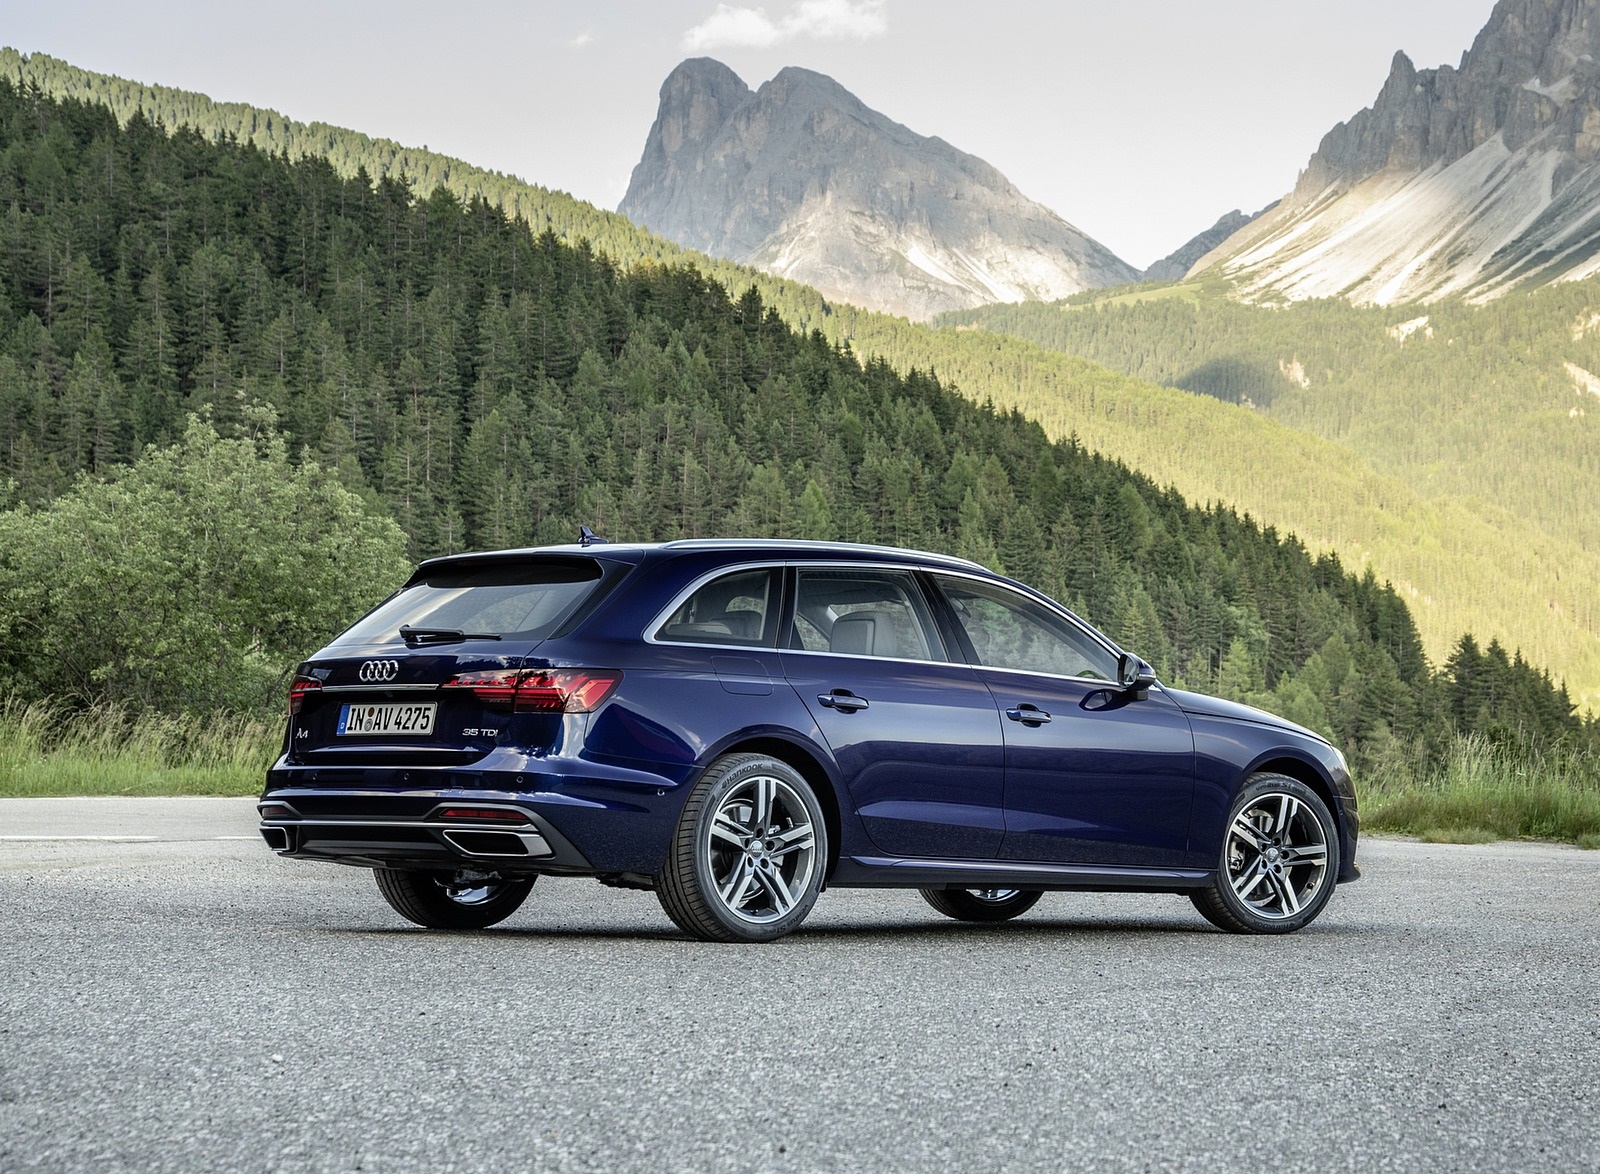 2020 Audi A4 Avant (Color: Navarra Blue) Rear Three-Quarter Wallpapers #41 of 61